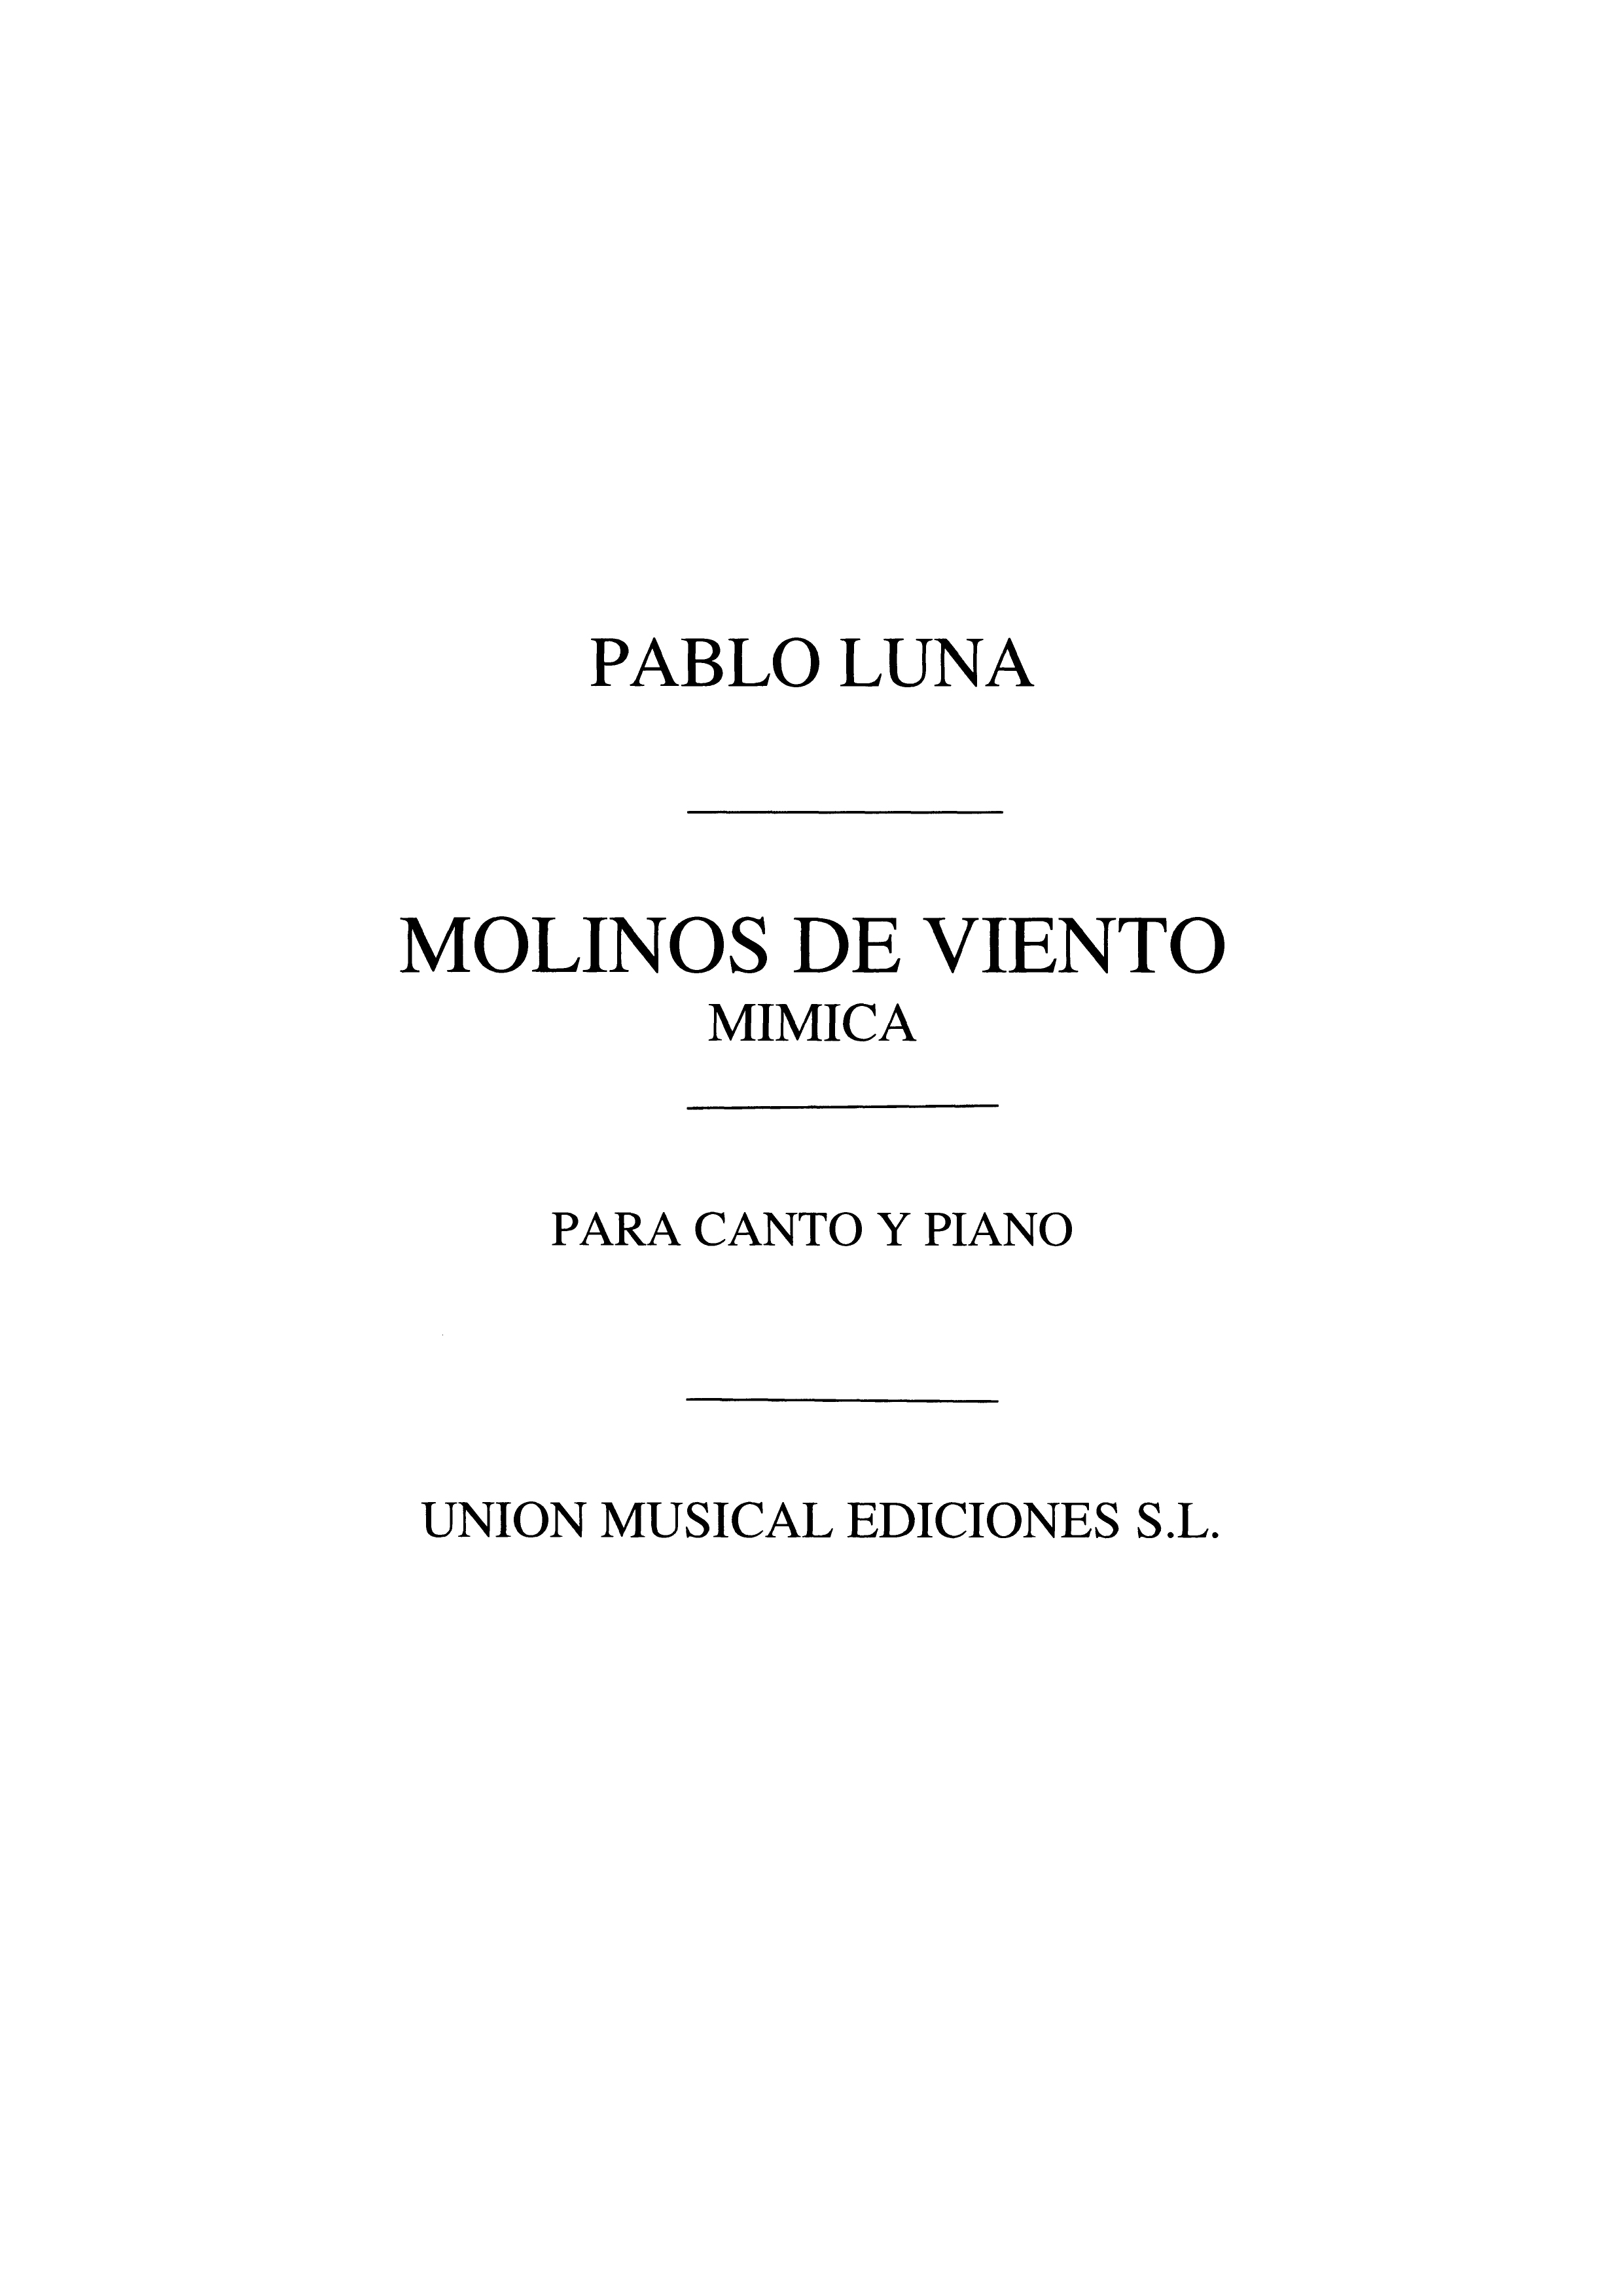 Pablo Luna: Pablo Luna: Mimica (From Molinos De Viento)